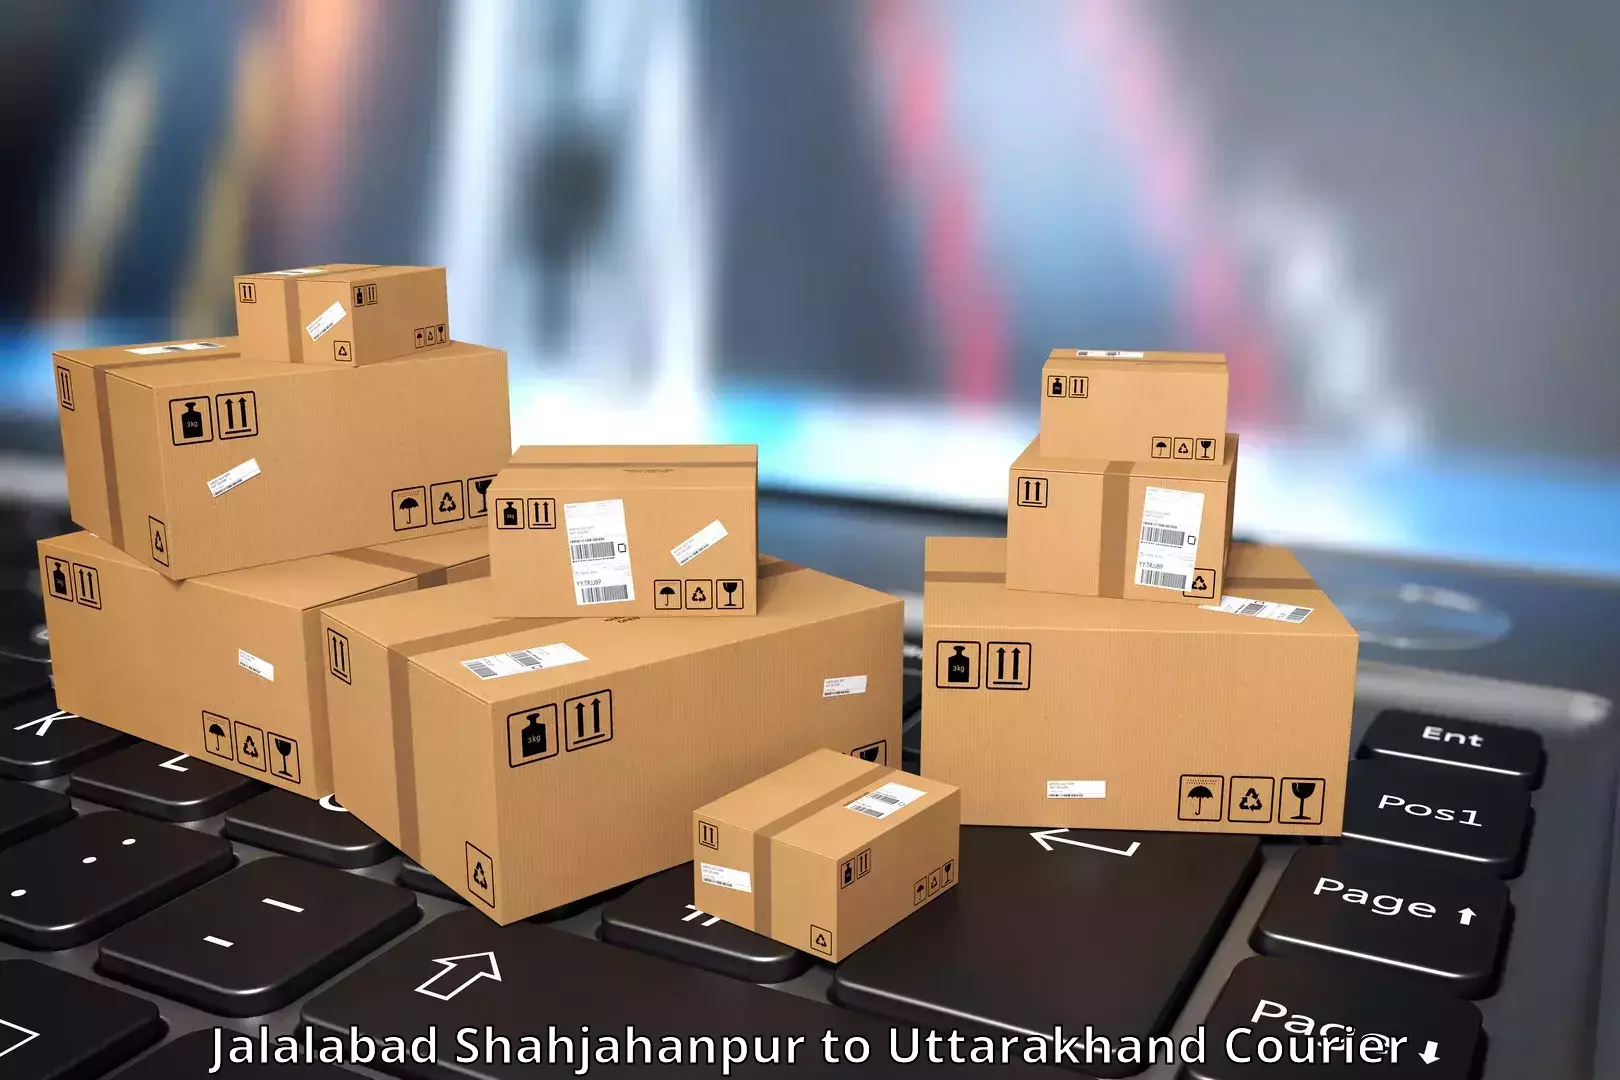 Express logistics service Jalalabad Shahjahanpur to Karnaprayag